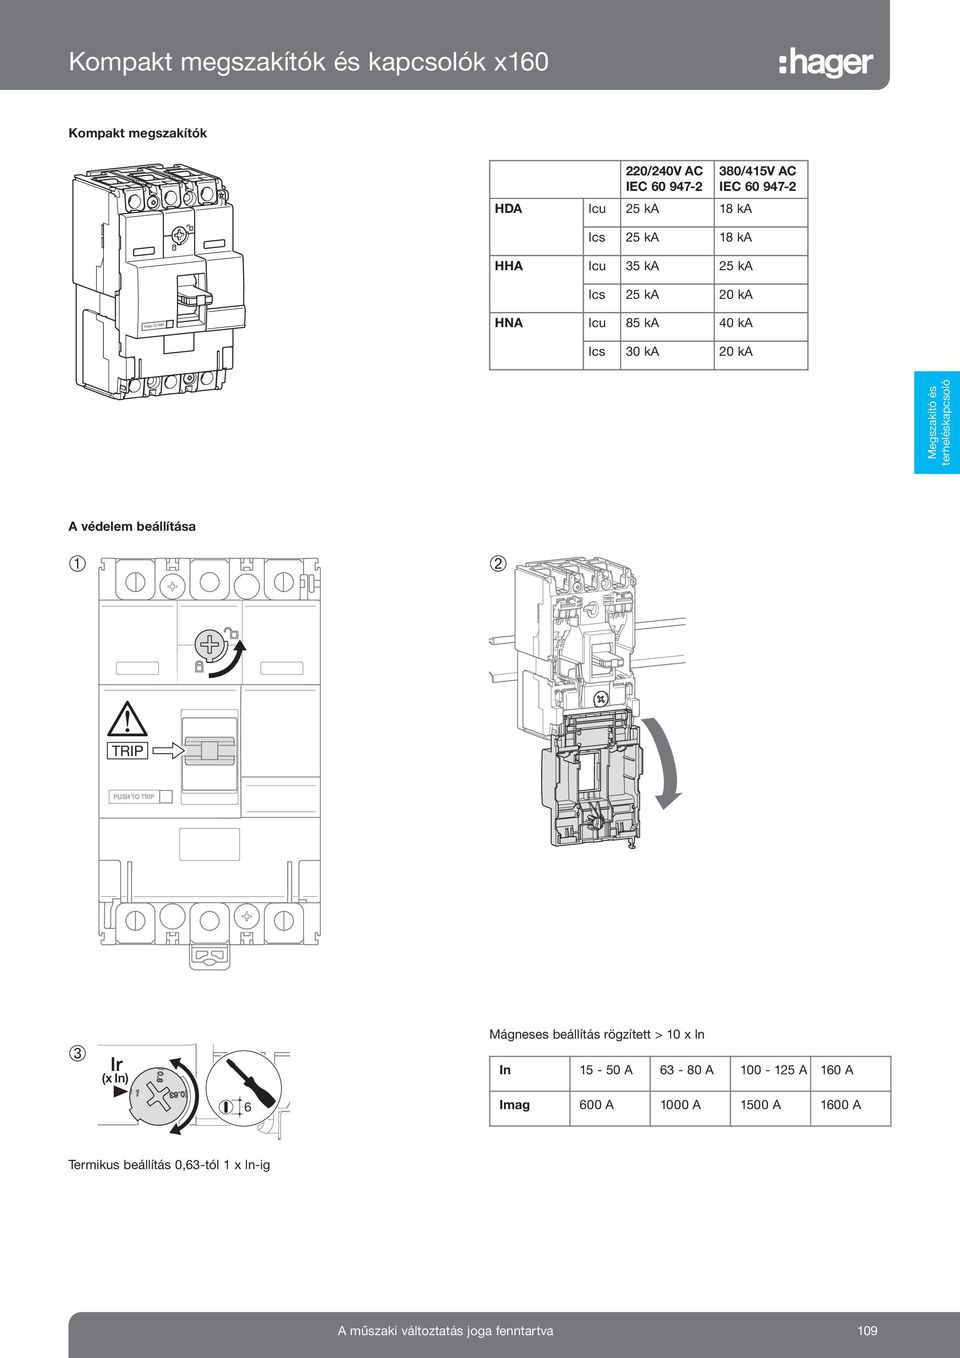 Megszakító és terheléskapcsoló. Öntöttházas kompakt készülékek, szakaszoló-  és terheléskapcsolók, átkapcsolók 1600A-ig - PDF Ingyenes letöltés